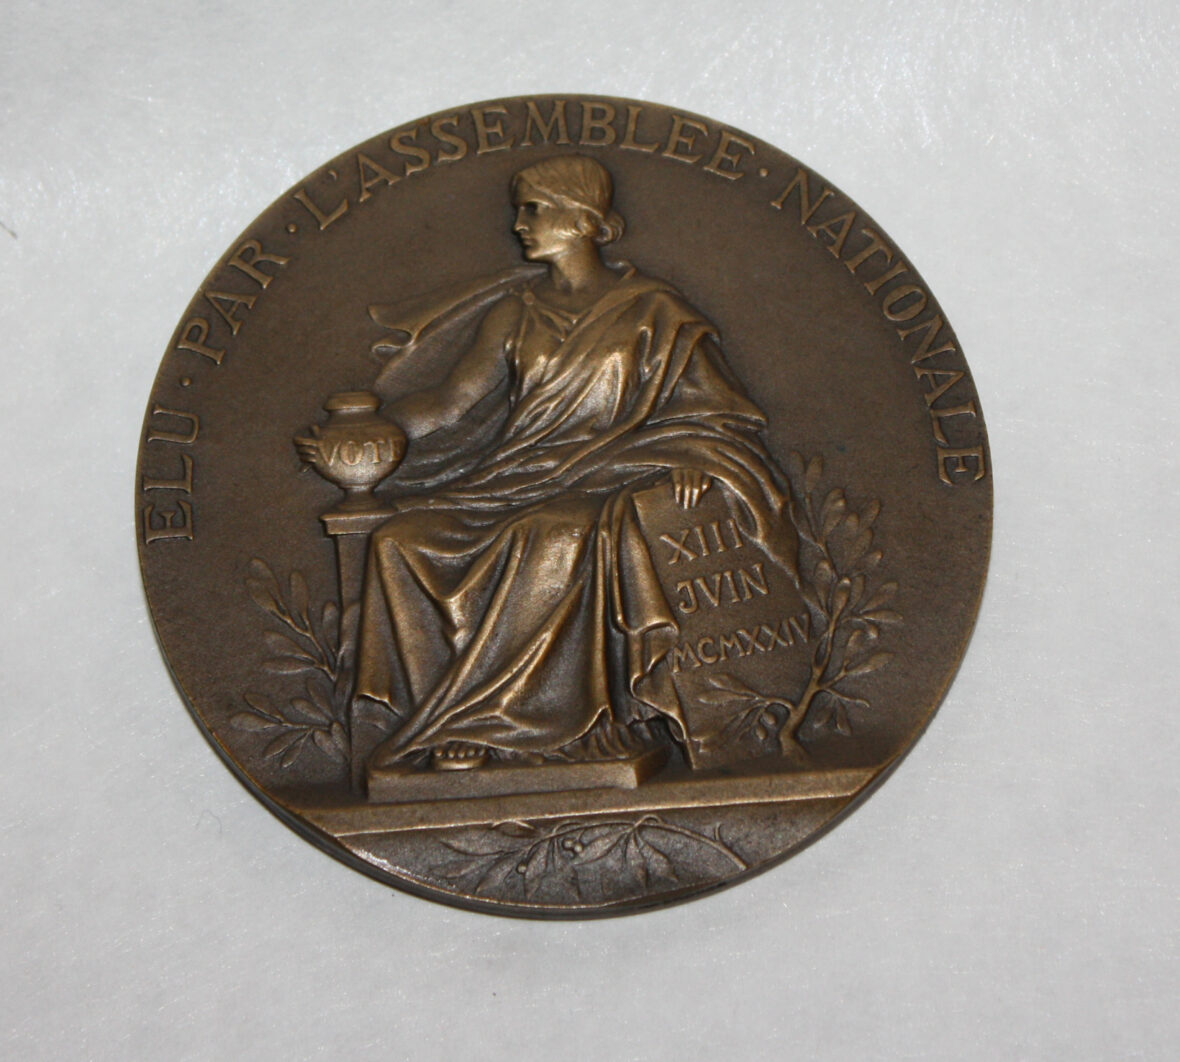 A Gaston DOUMERGUE, président de la République française, médaille en bonze signée par Prud’homme.